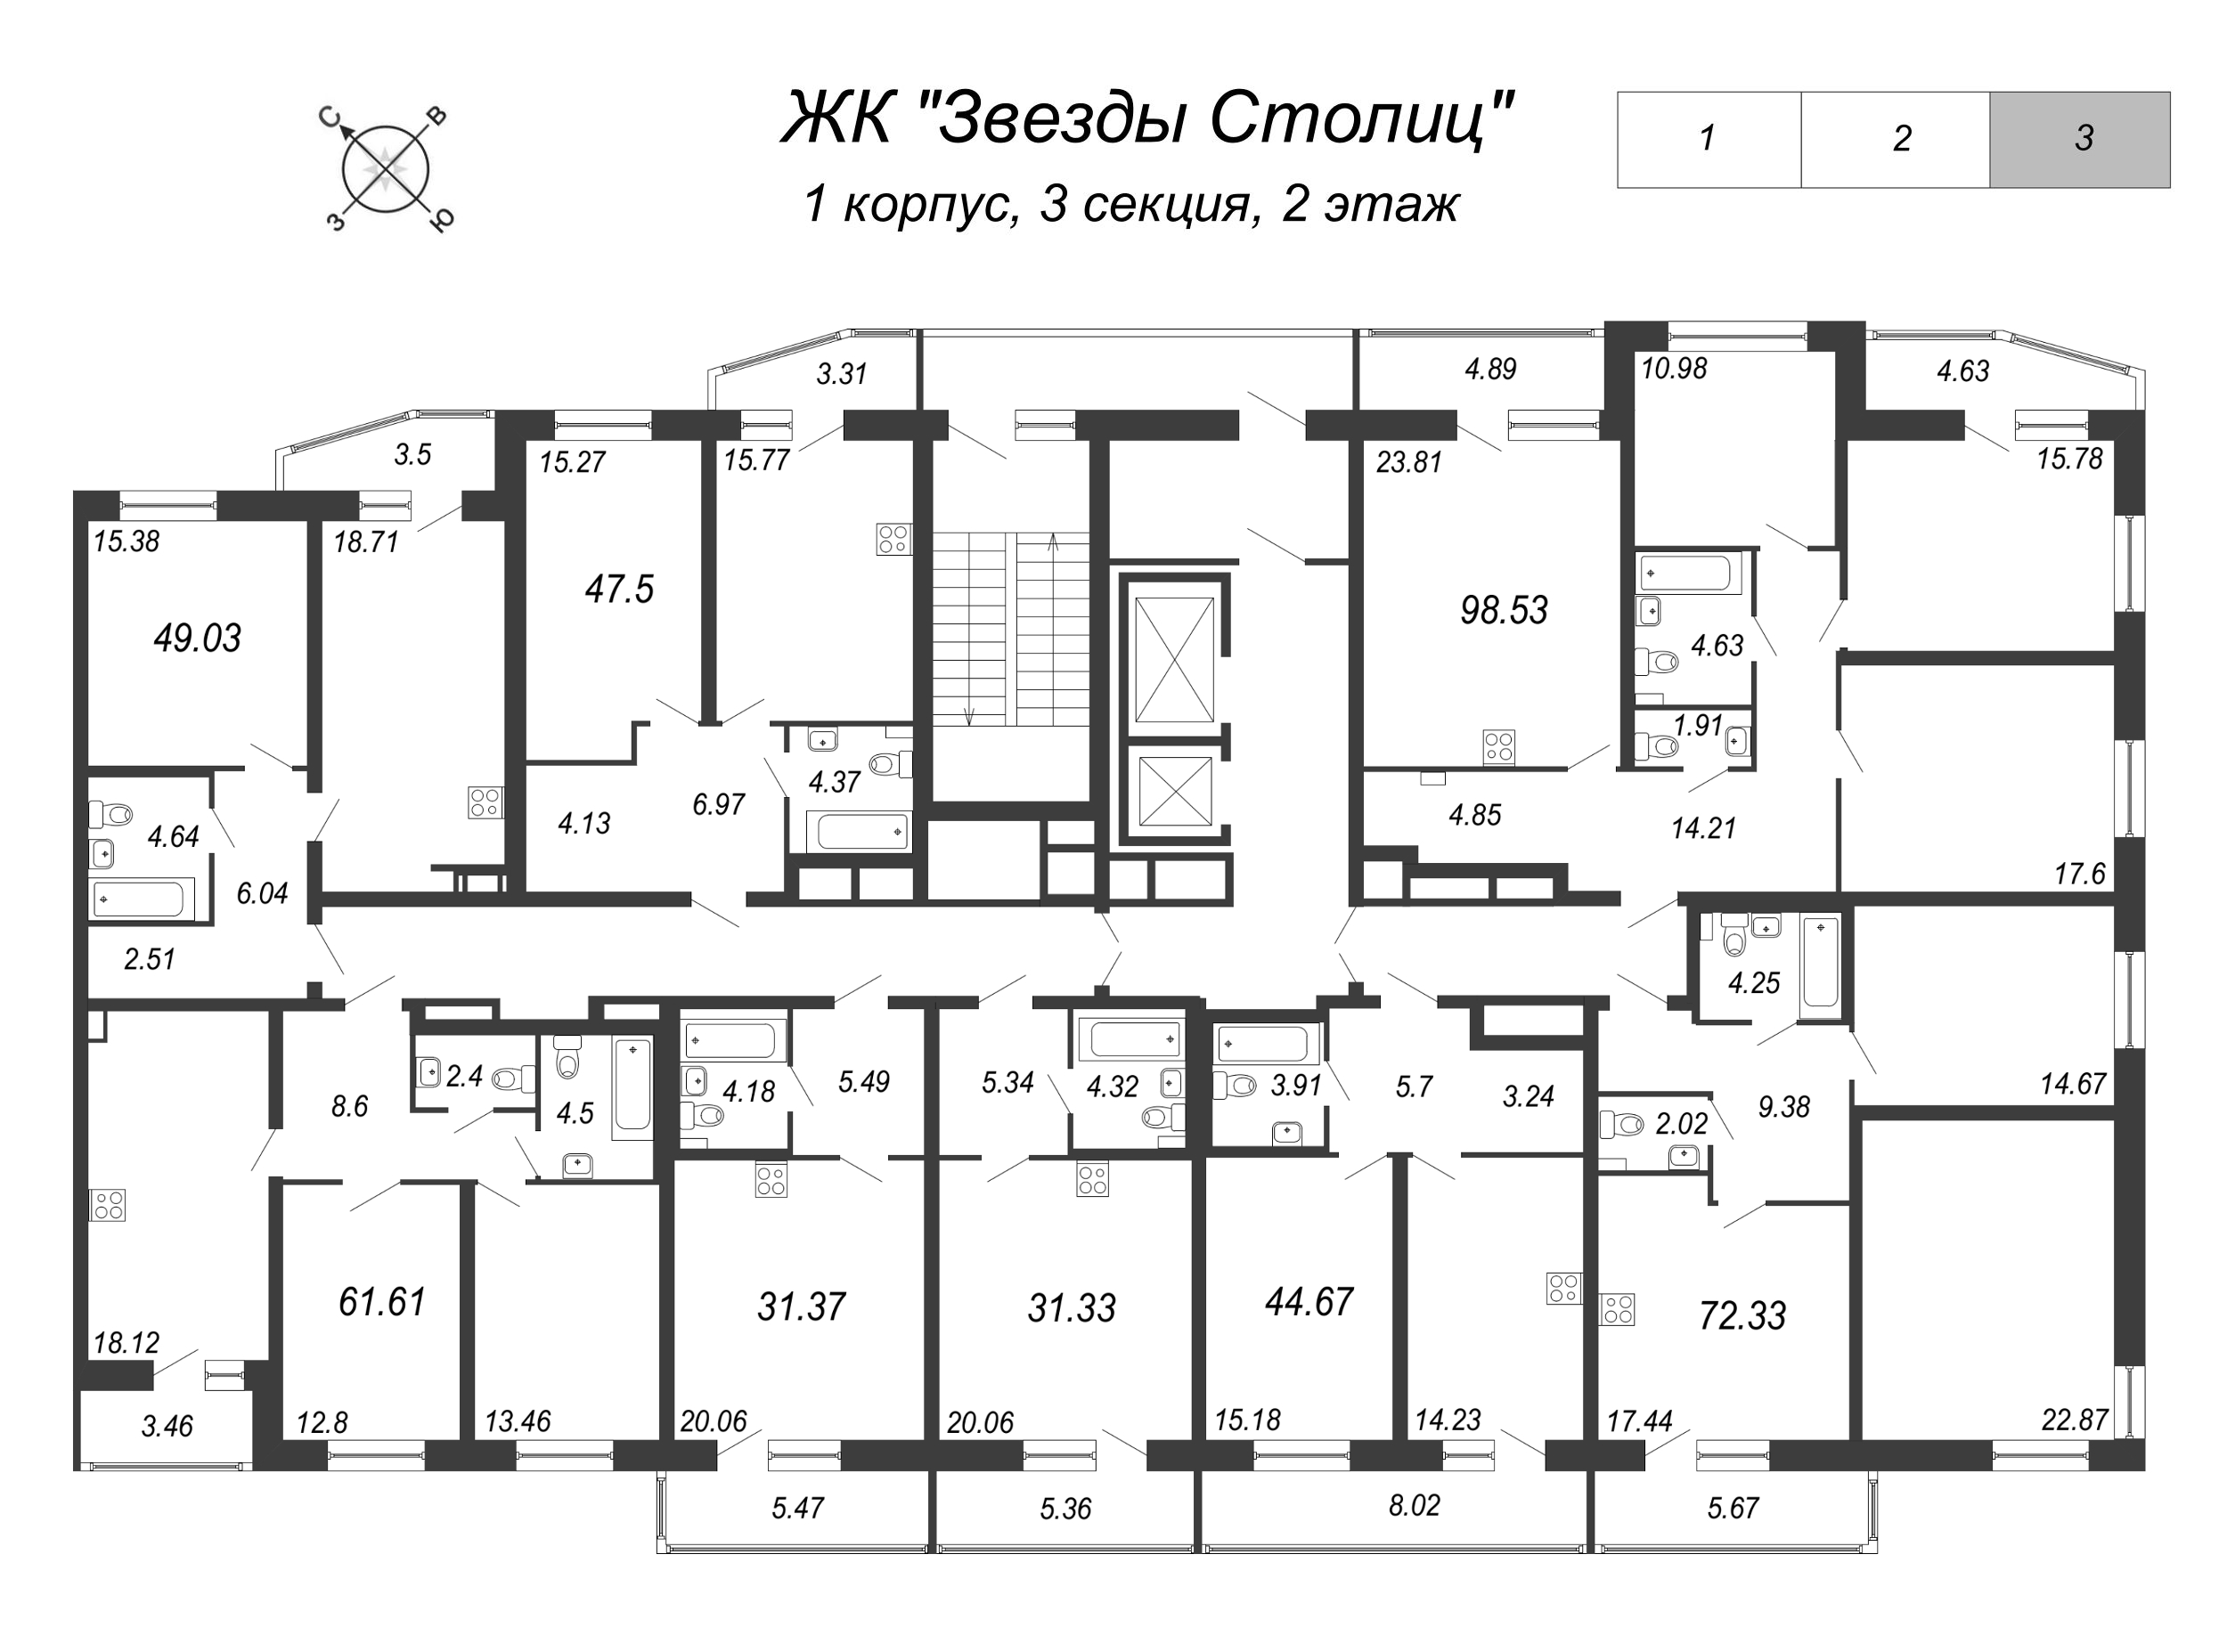 4-комнатная (Евро) квартира, 94 м² в ЖК "Звезды Столиц" - планировка этажа